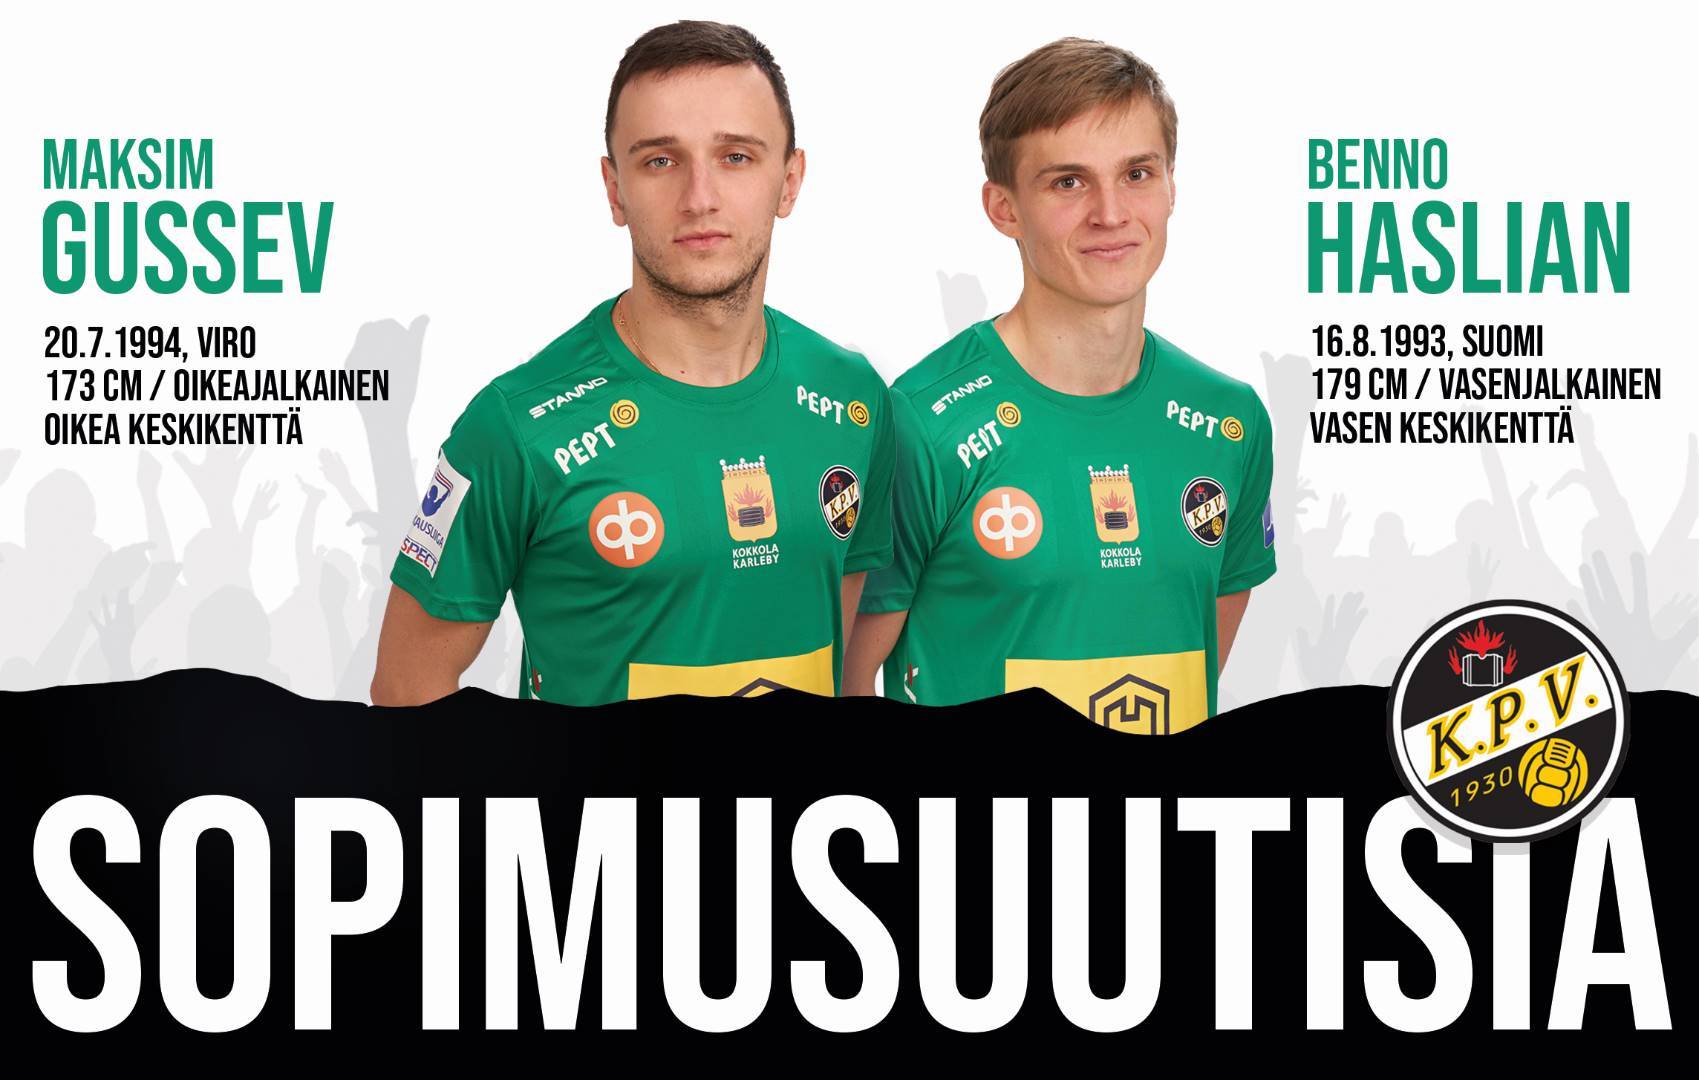 Maksim Gussev ja Benno Hanslian KPV:n paitaan, taustaryhmä kasassa